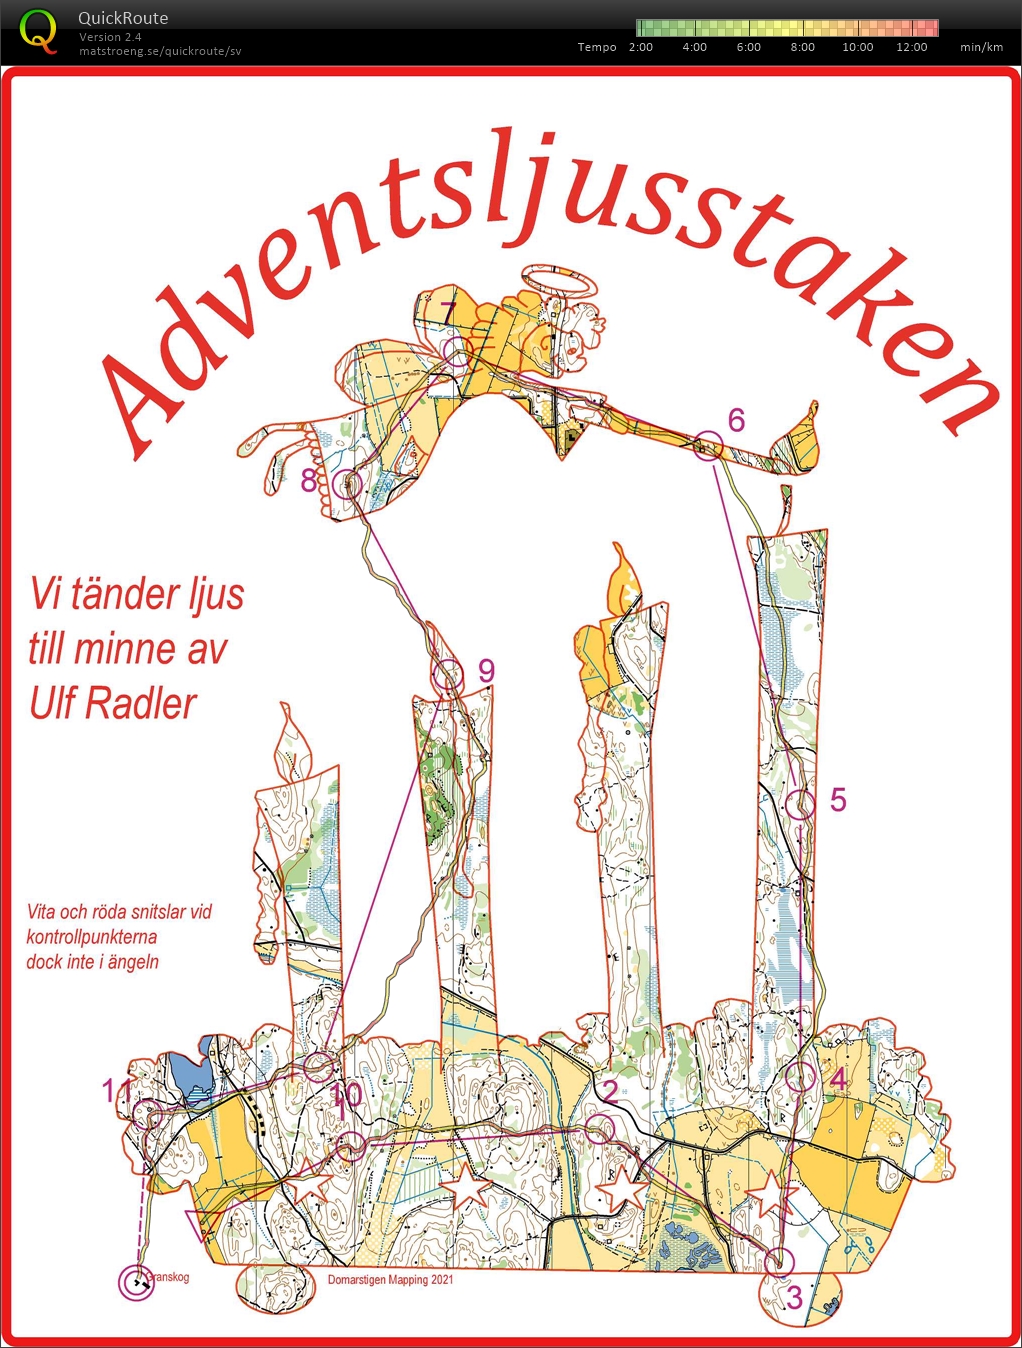 Adventsljusstaken - till minne av Ulf Radler (19/12/2021)